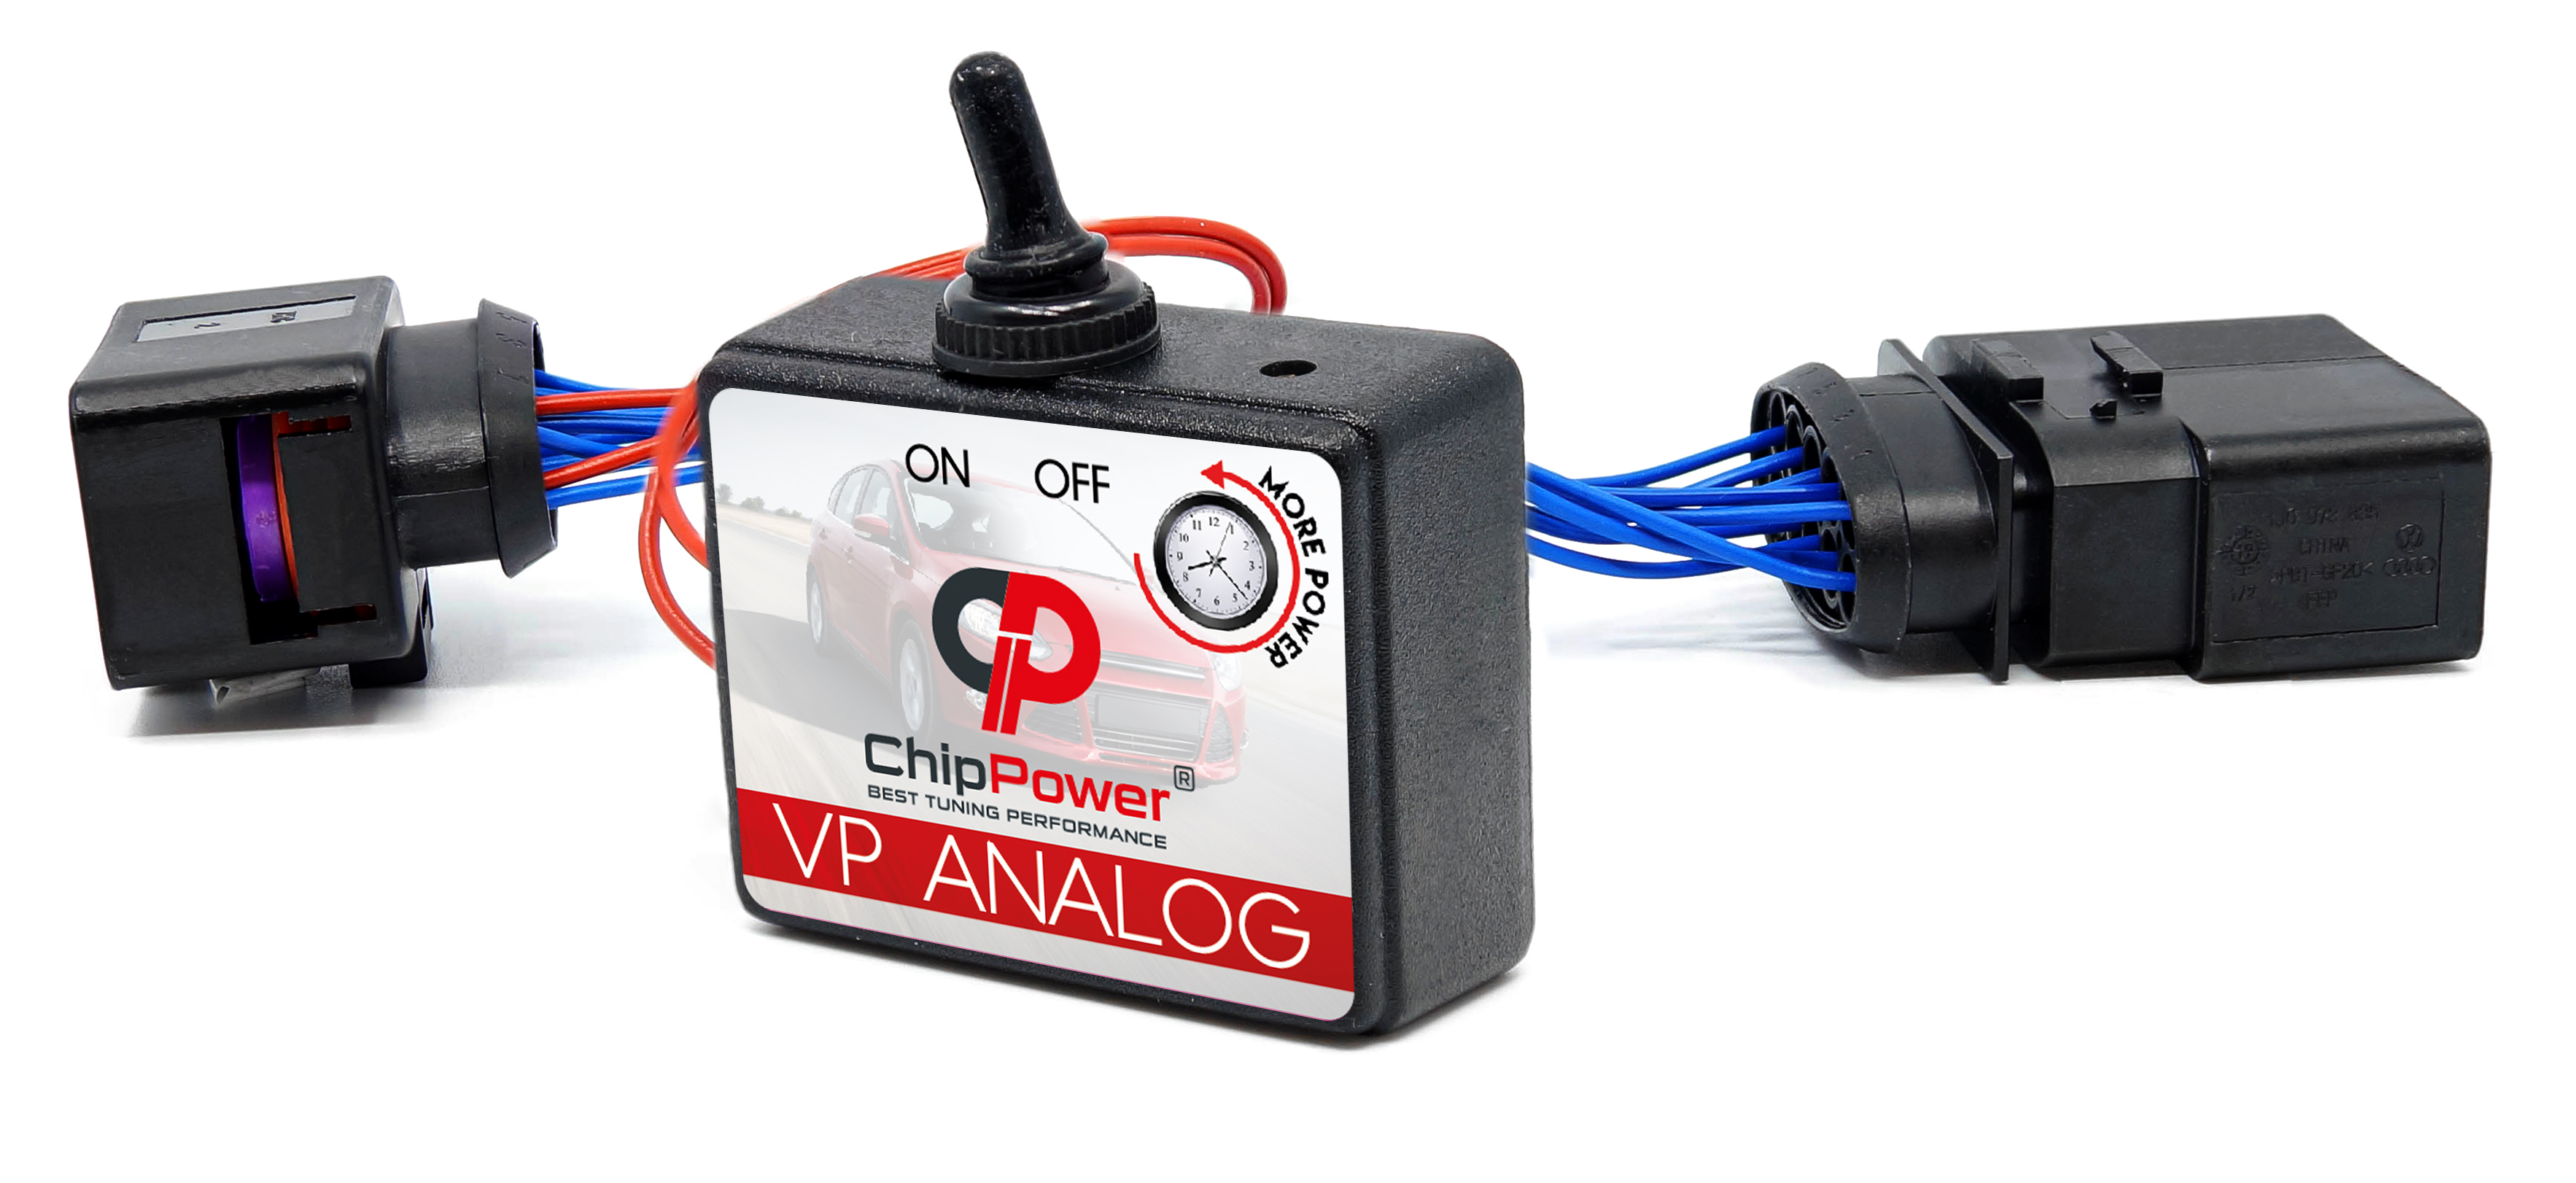 ChipPower VP ANALOG